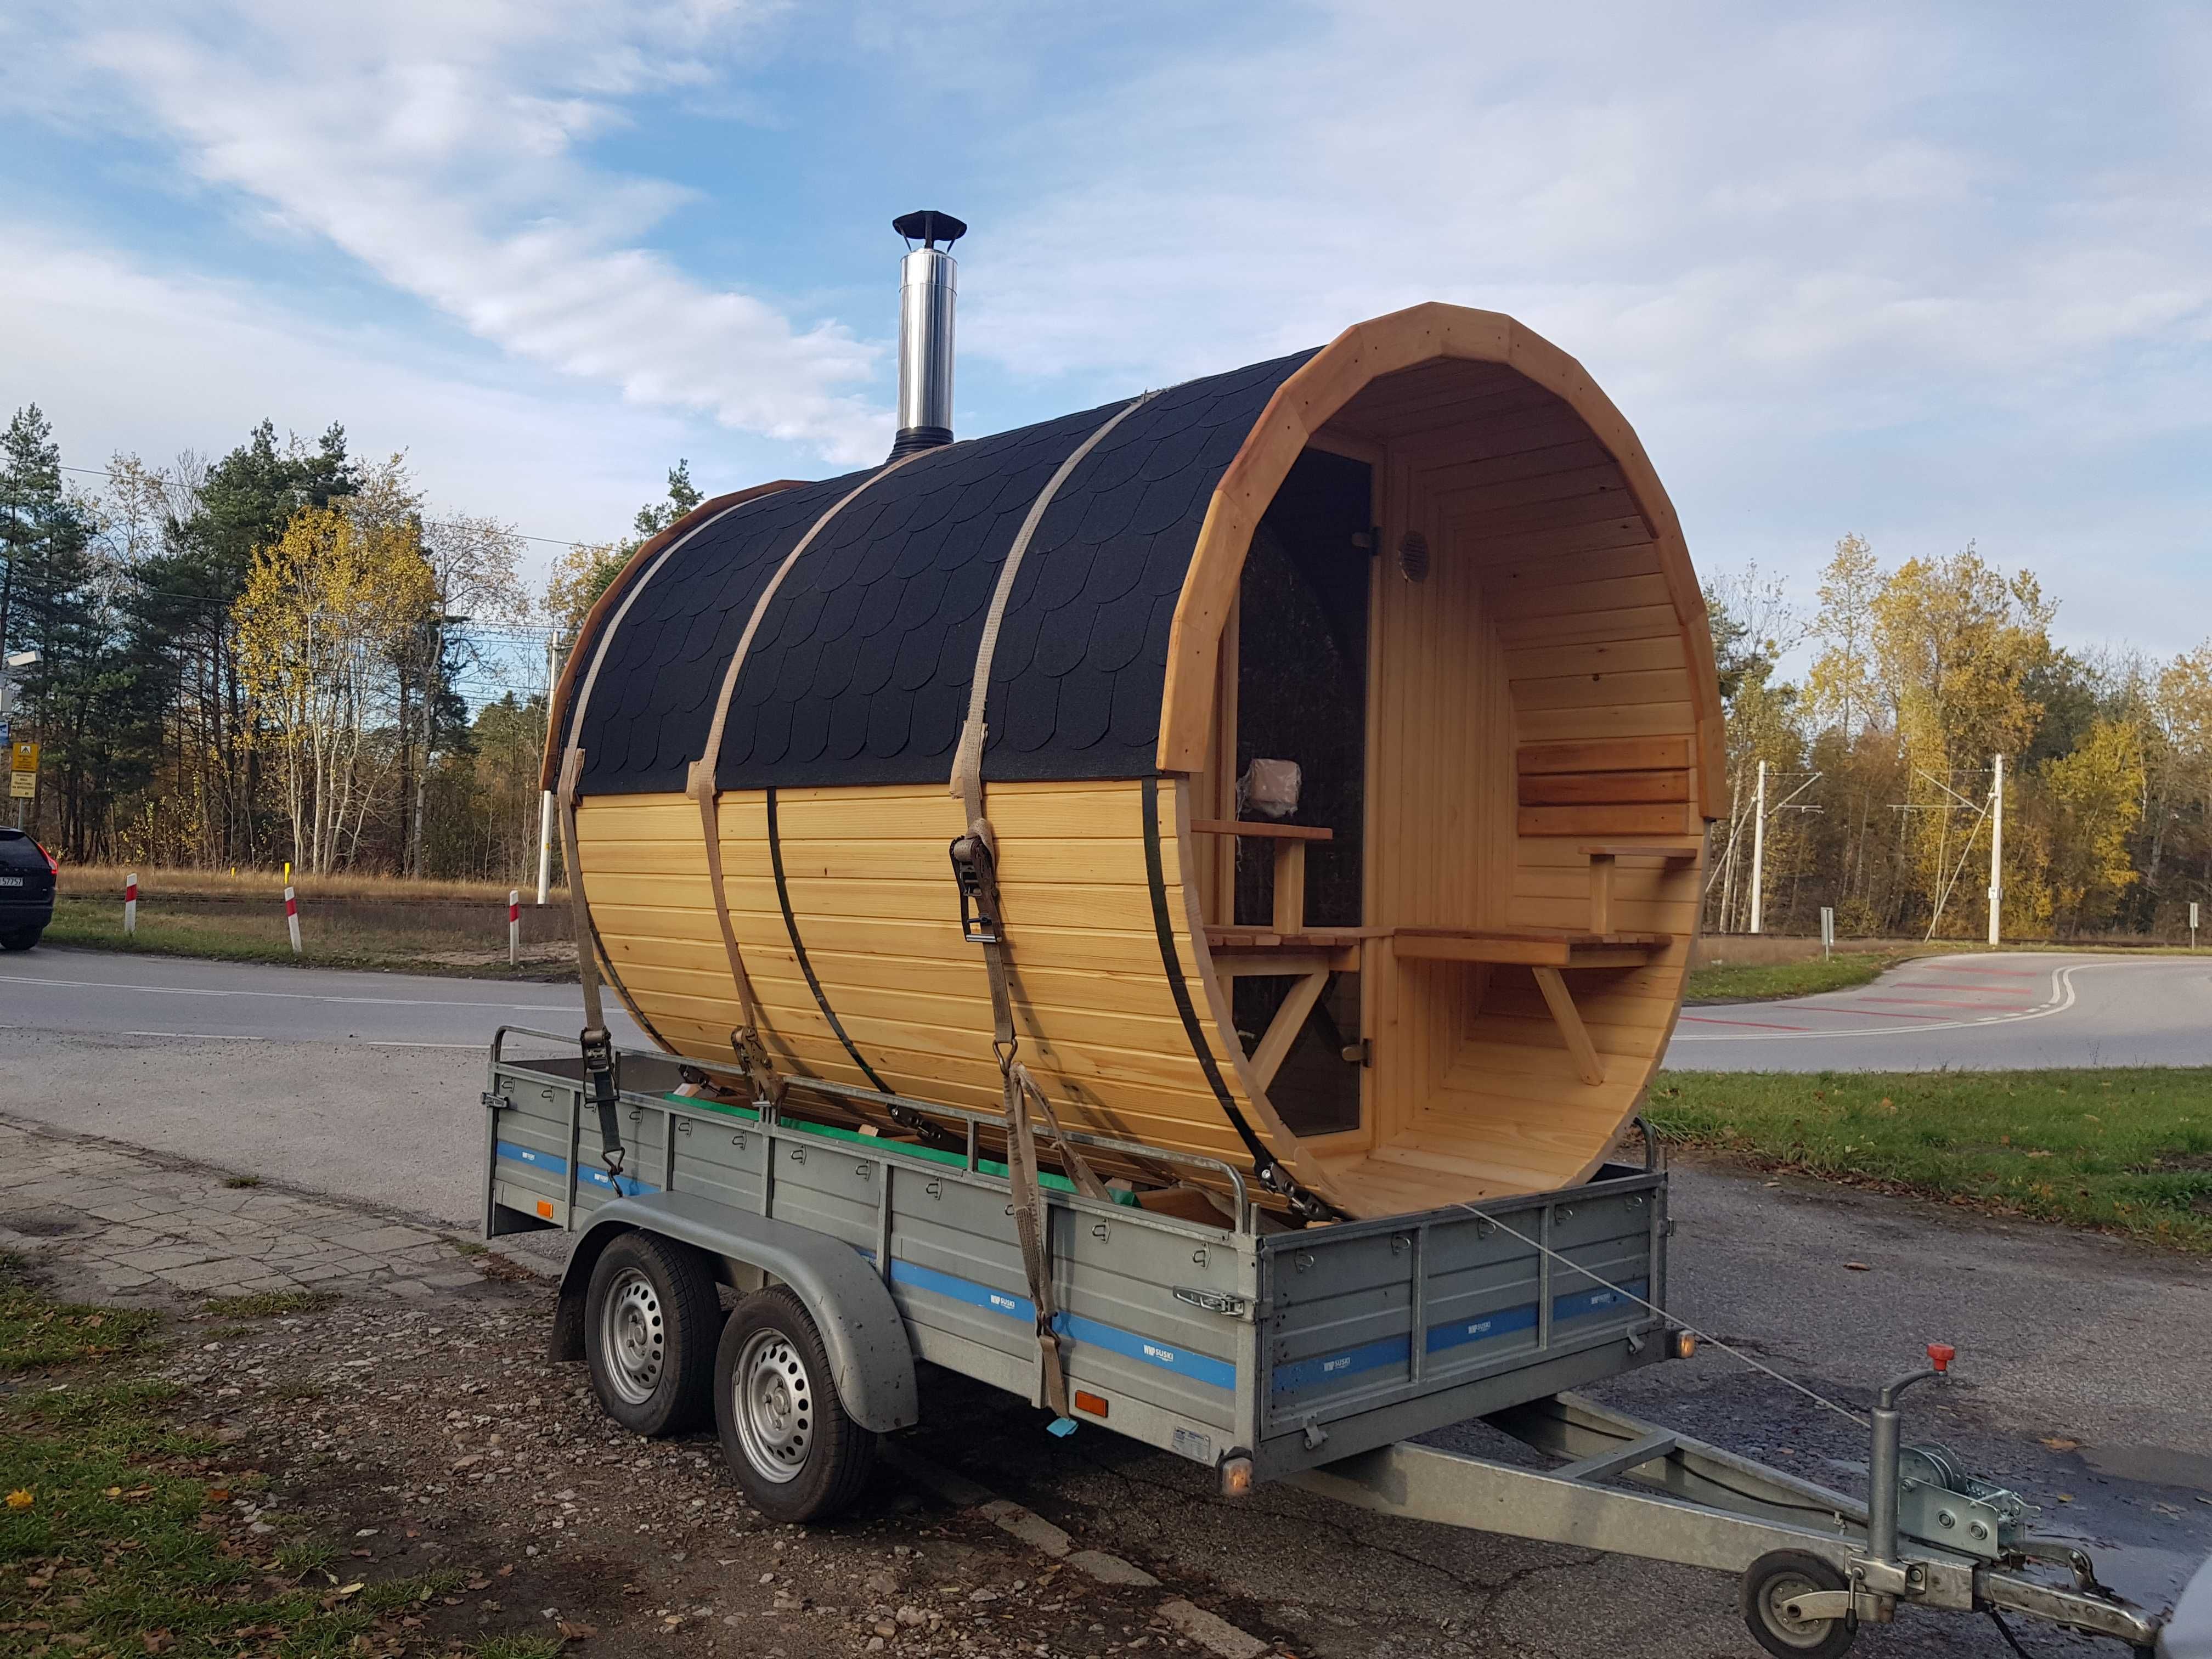 Sauna ogrodowa drewniana z tarasem beczka piec drewno 2,5m szyba 50%